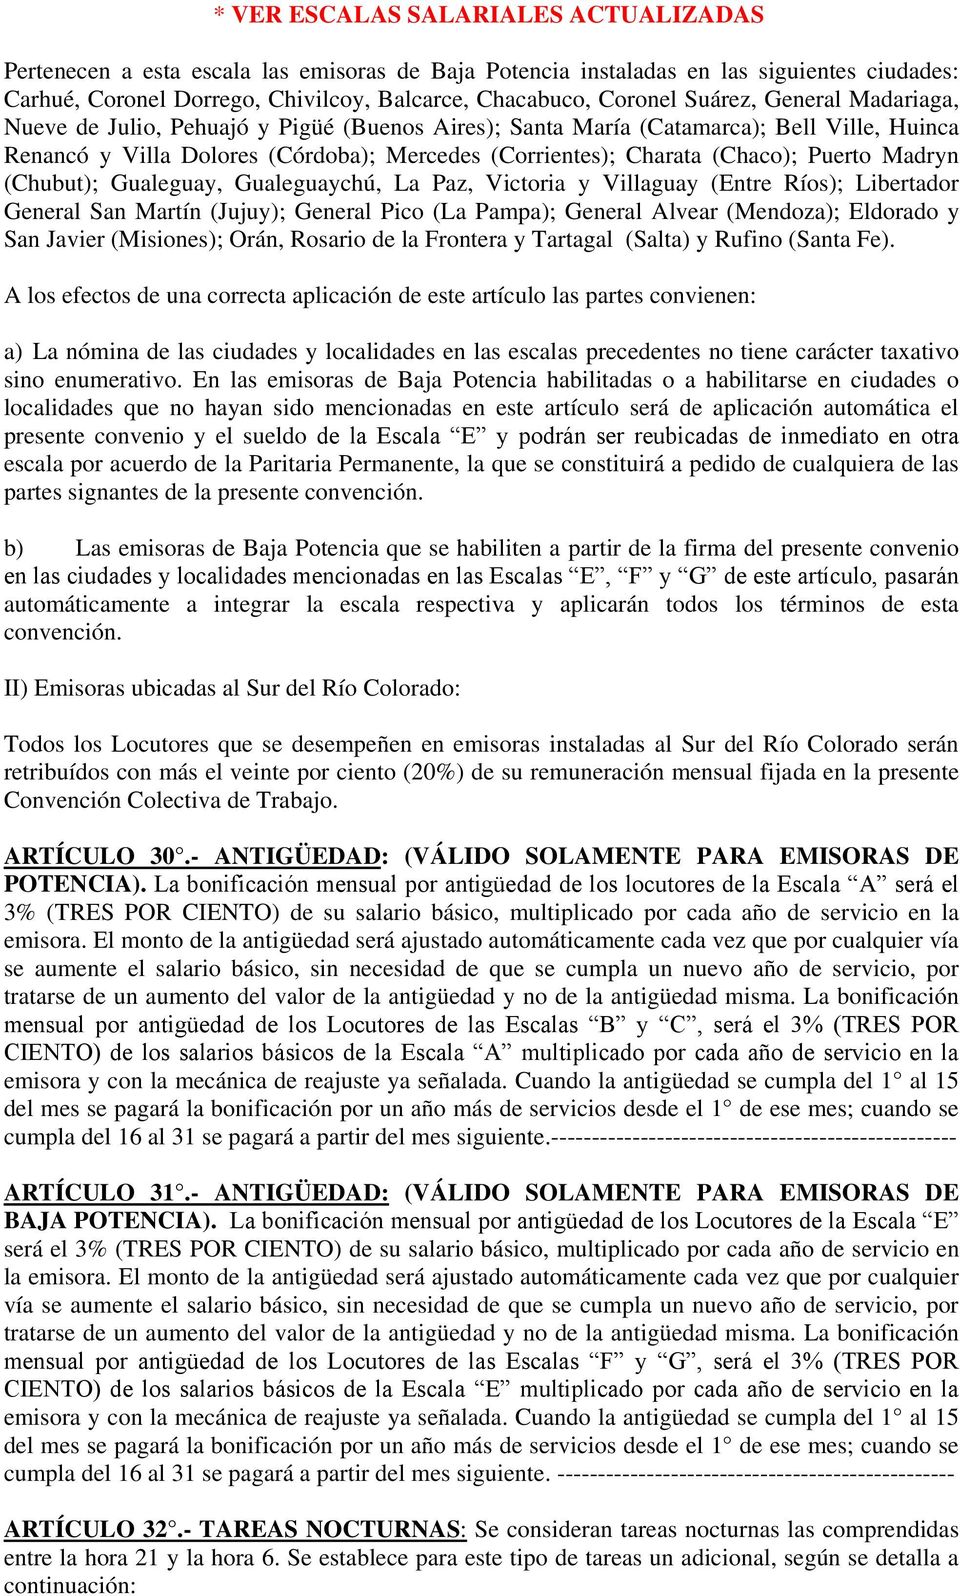 Puerto Madryn (Chubut); Gualeguay, Gualeguaychú, La Paz, Victoria y Villaguay (Entre Ríos); Libertador General San Martín (Jujuy); General Pico (La Pampa); General Alvear (Mendoza); Eldorado y San